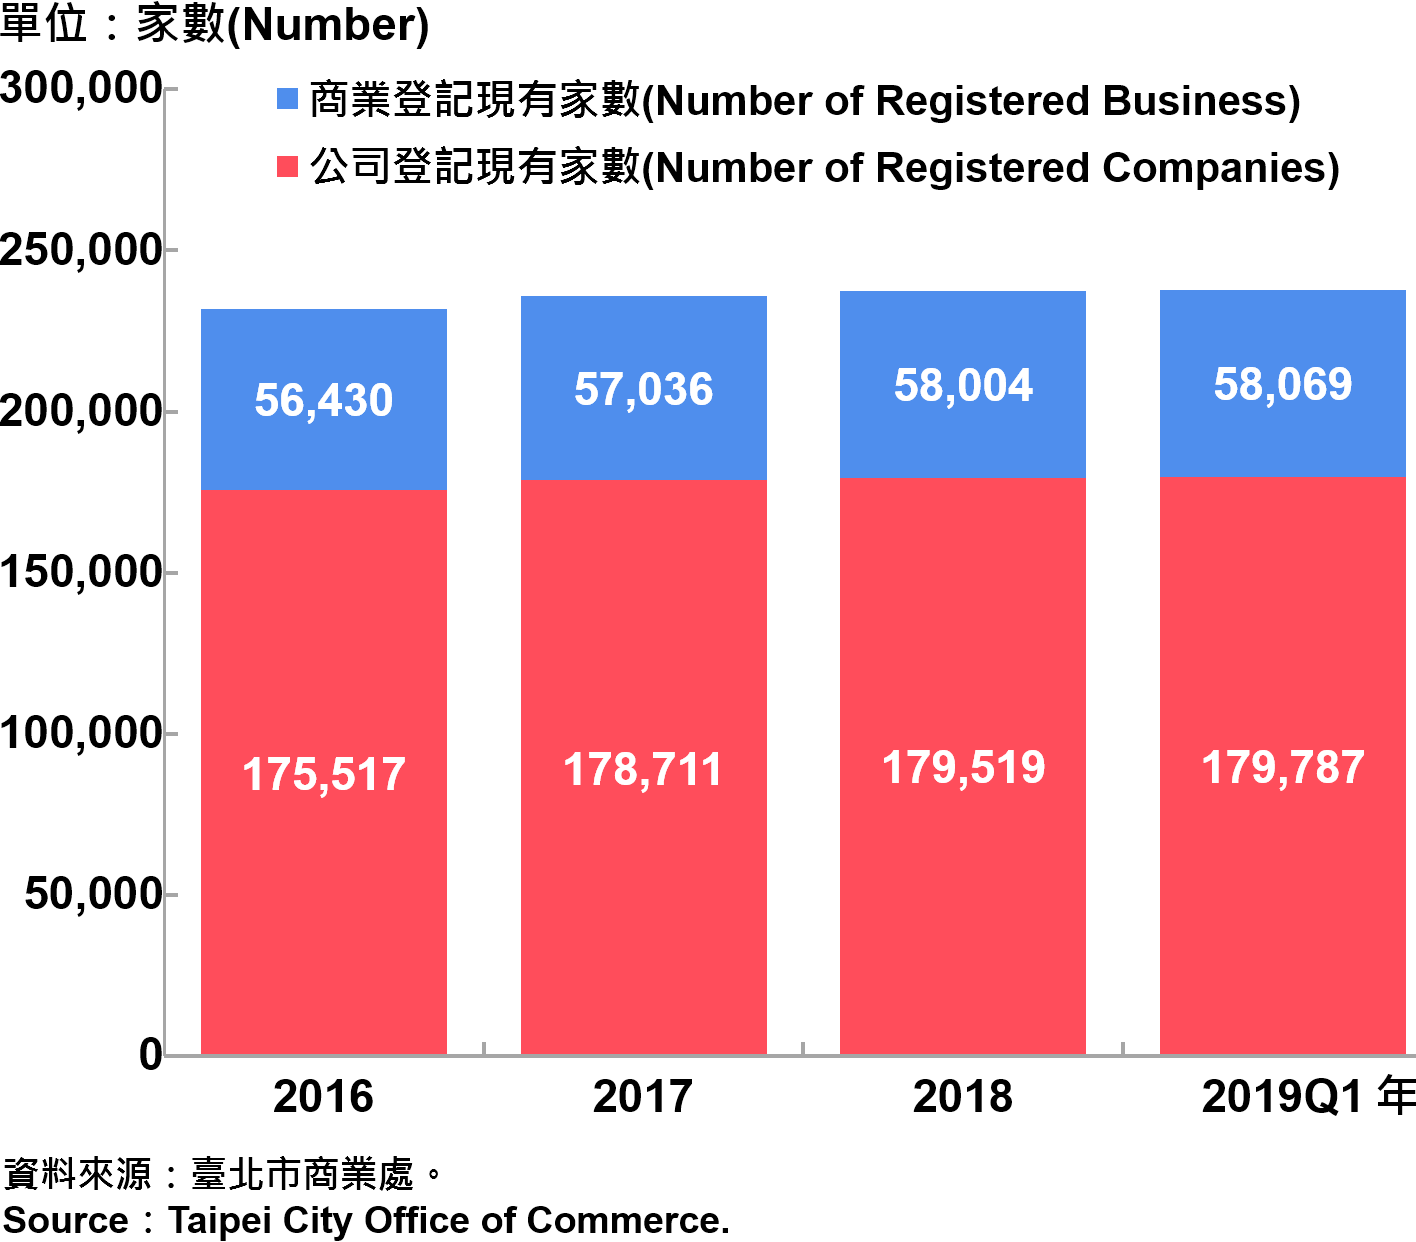 臺北市工商登記—2019Q1 Industry & Business Registration in Taipei—2019Q1